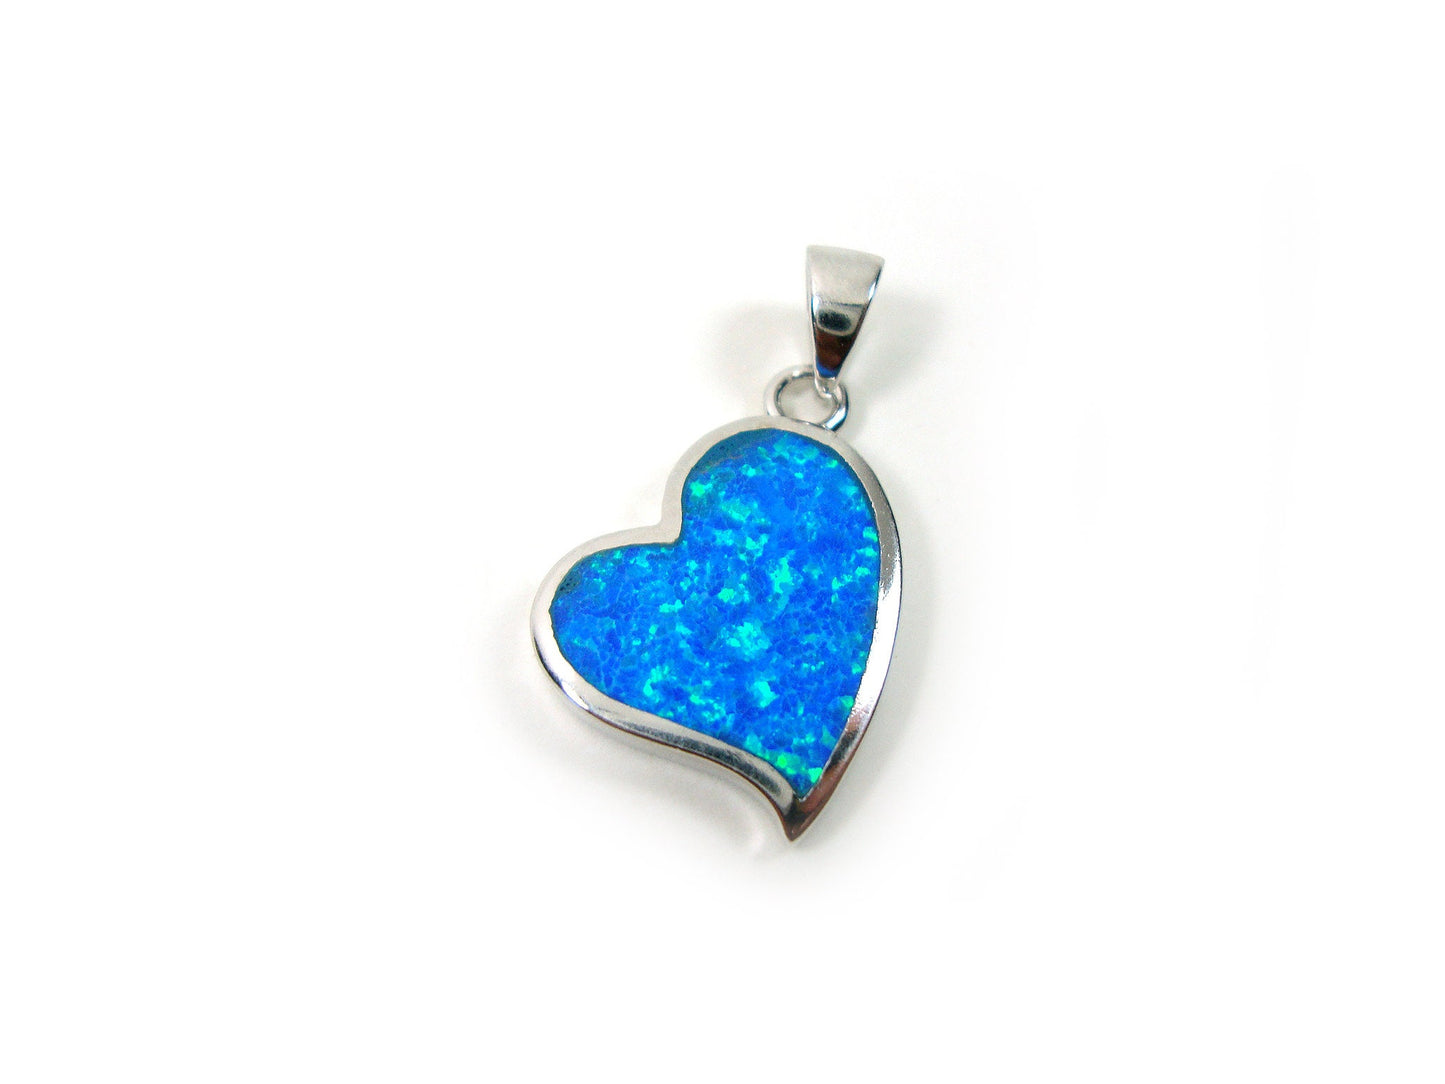 Sterling Silber 925 Herz Tropical Ocean Blue Opal Anhänger 19x15mm, Freundschaft Liebe Beziehung Anhänger, Griechisches Blau Opal Anhanger